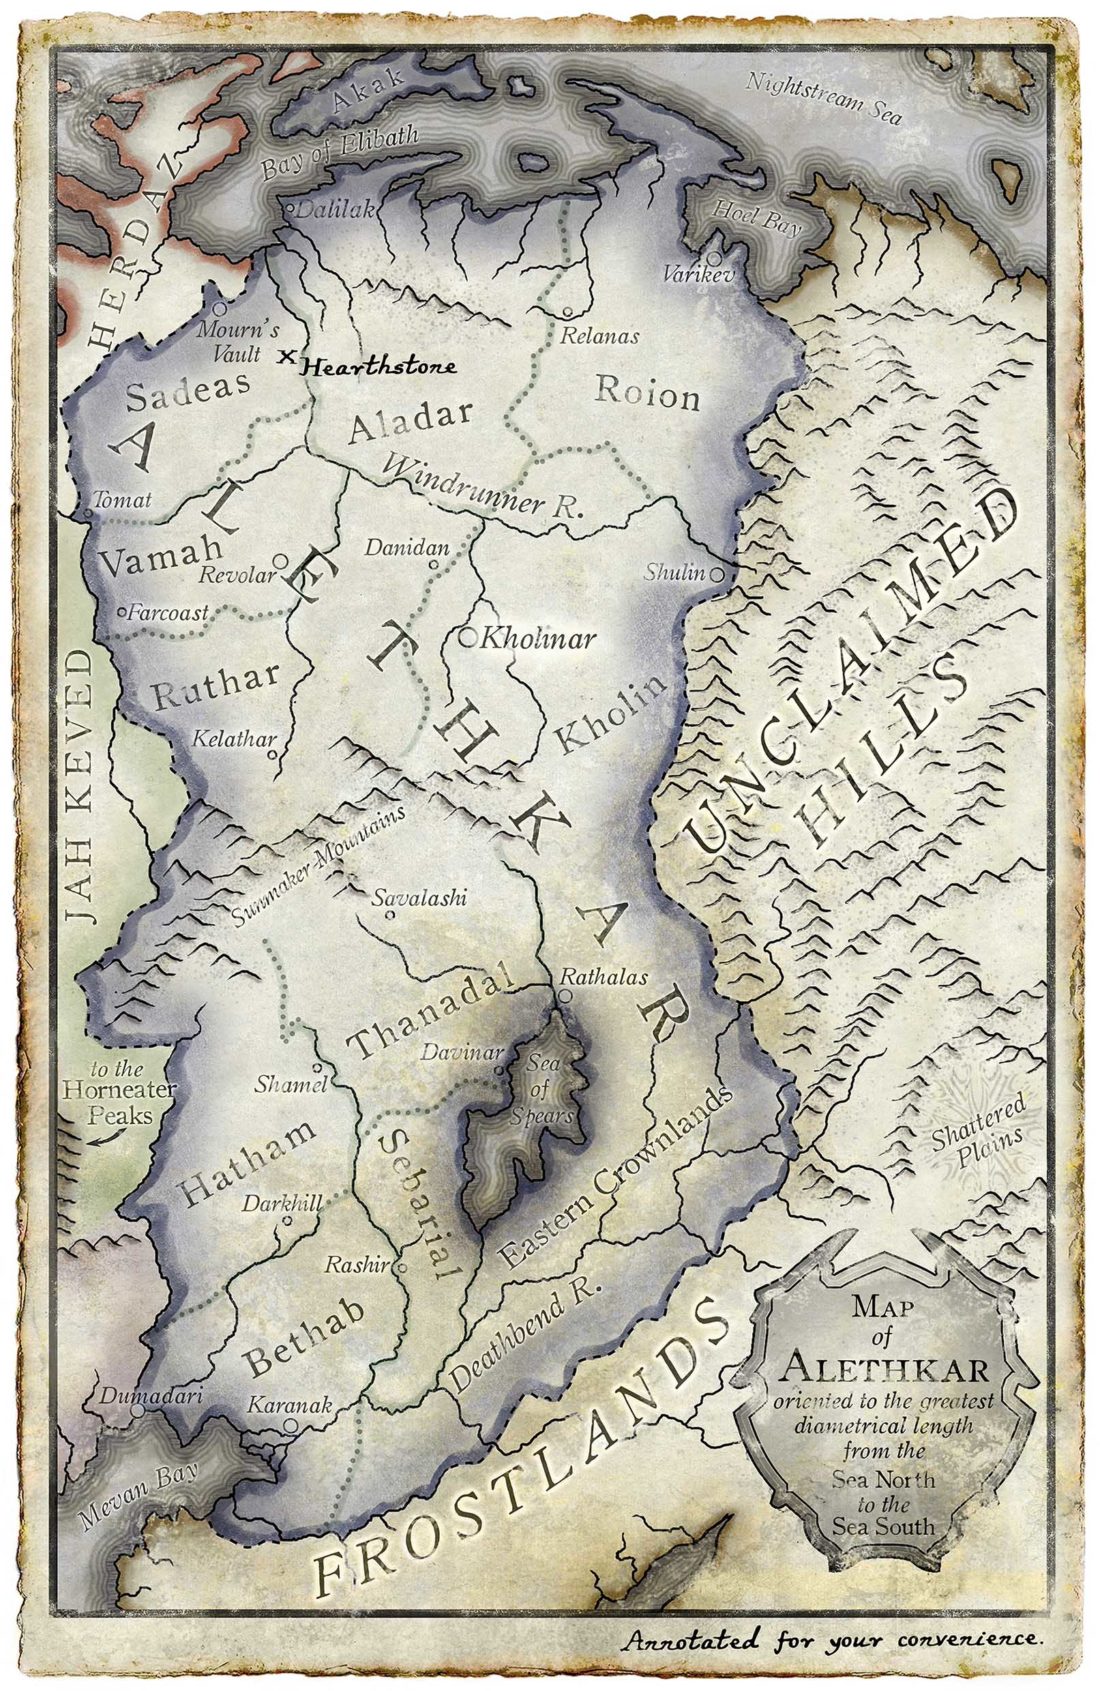 Map of Alethkar